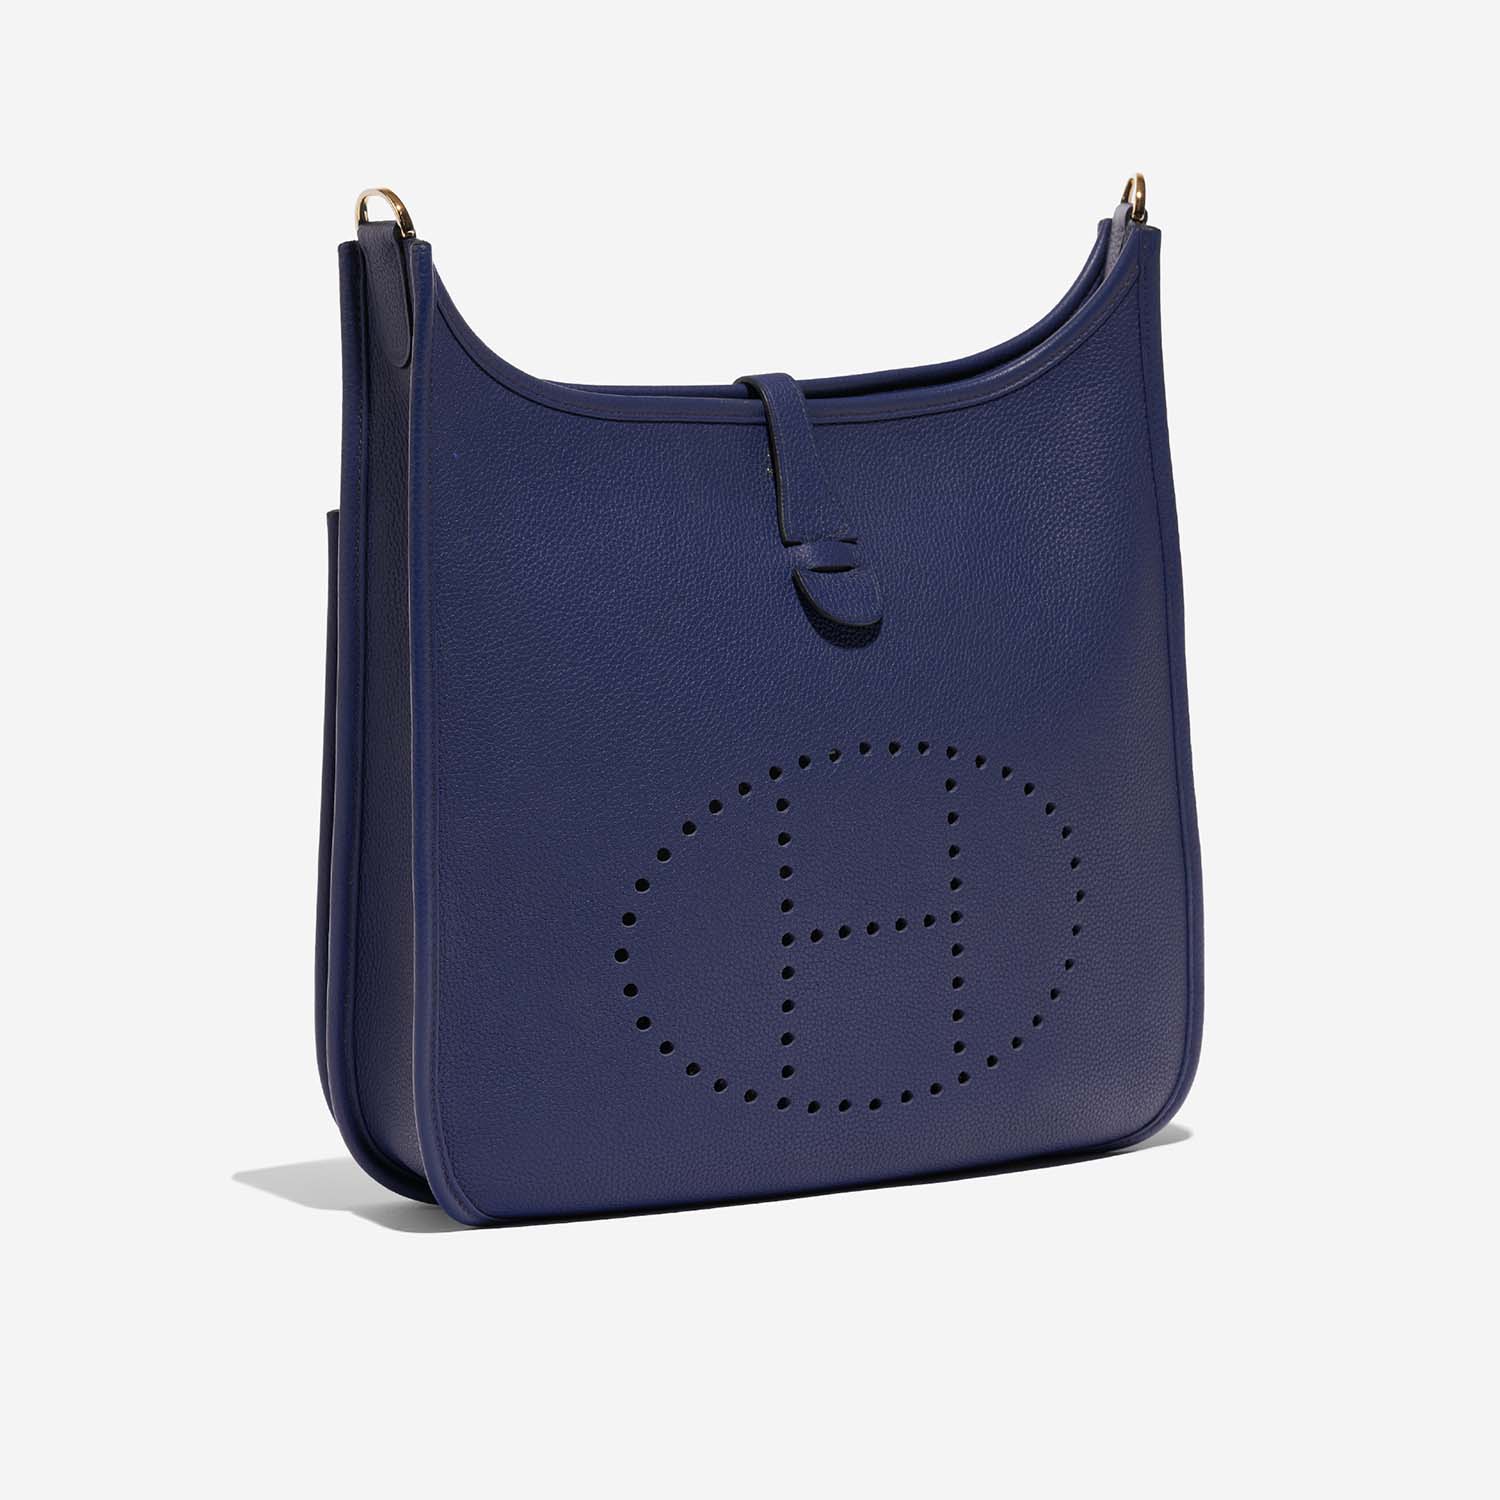 Hermès Evelyne 29 BleuSapphire Side Front | Verkaufen Sie Ihre Designer-Tasche auf Saclab.com